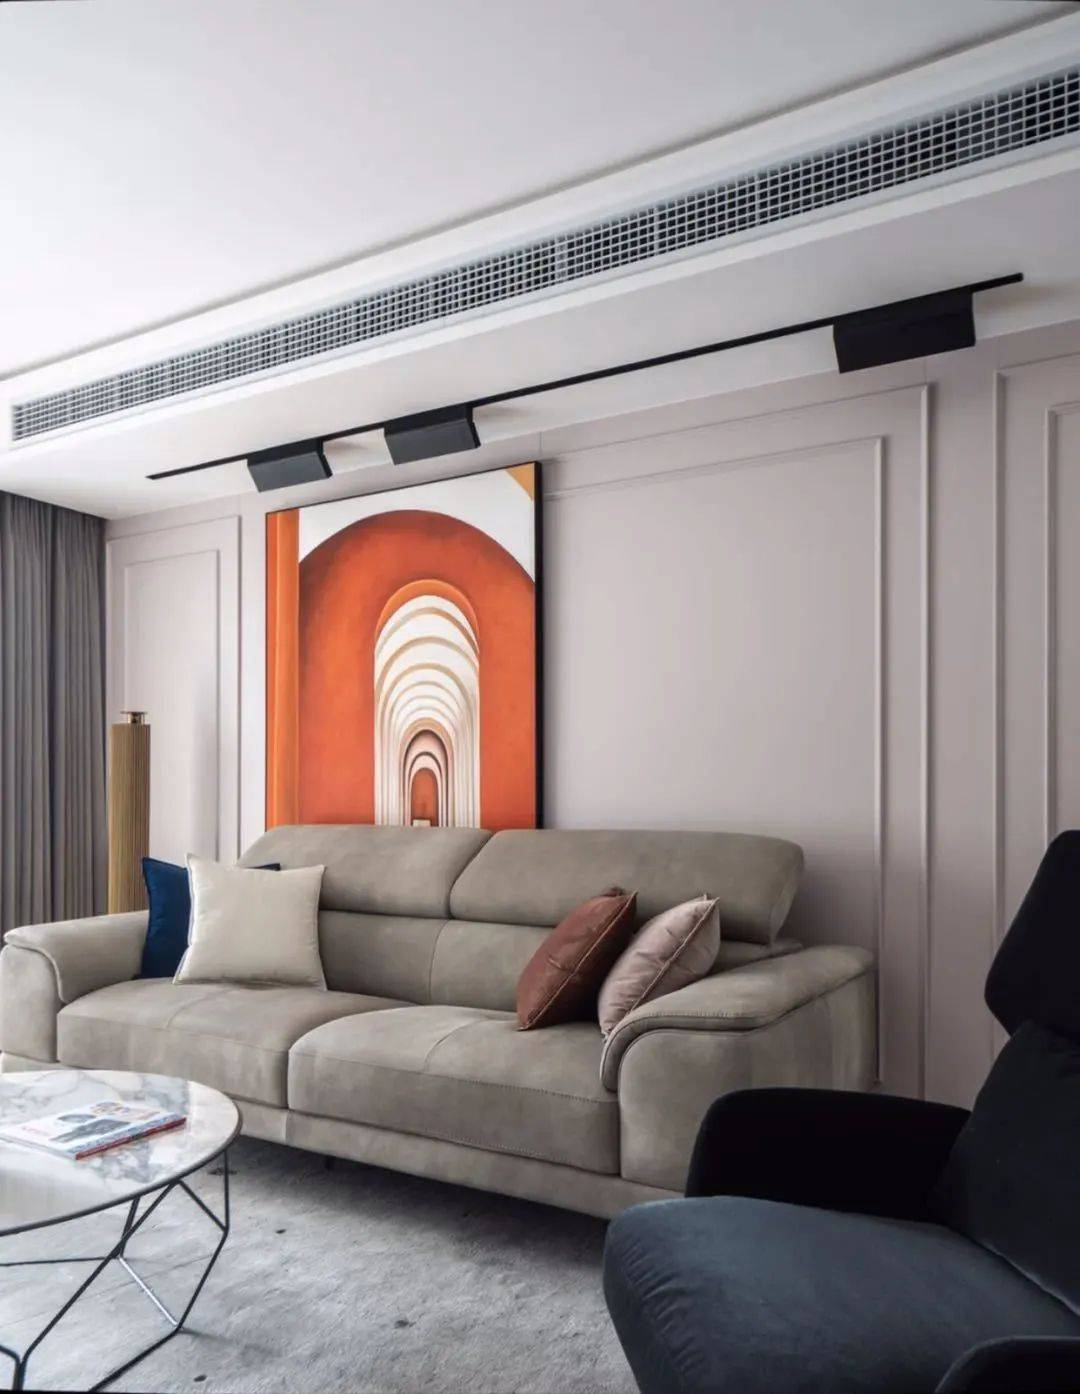 美的家用中央空调安装标准图册V8.0—新浪家居